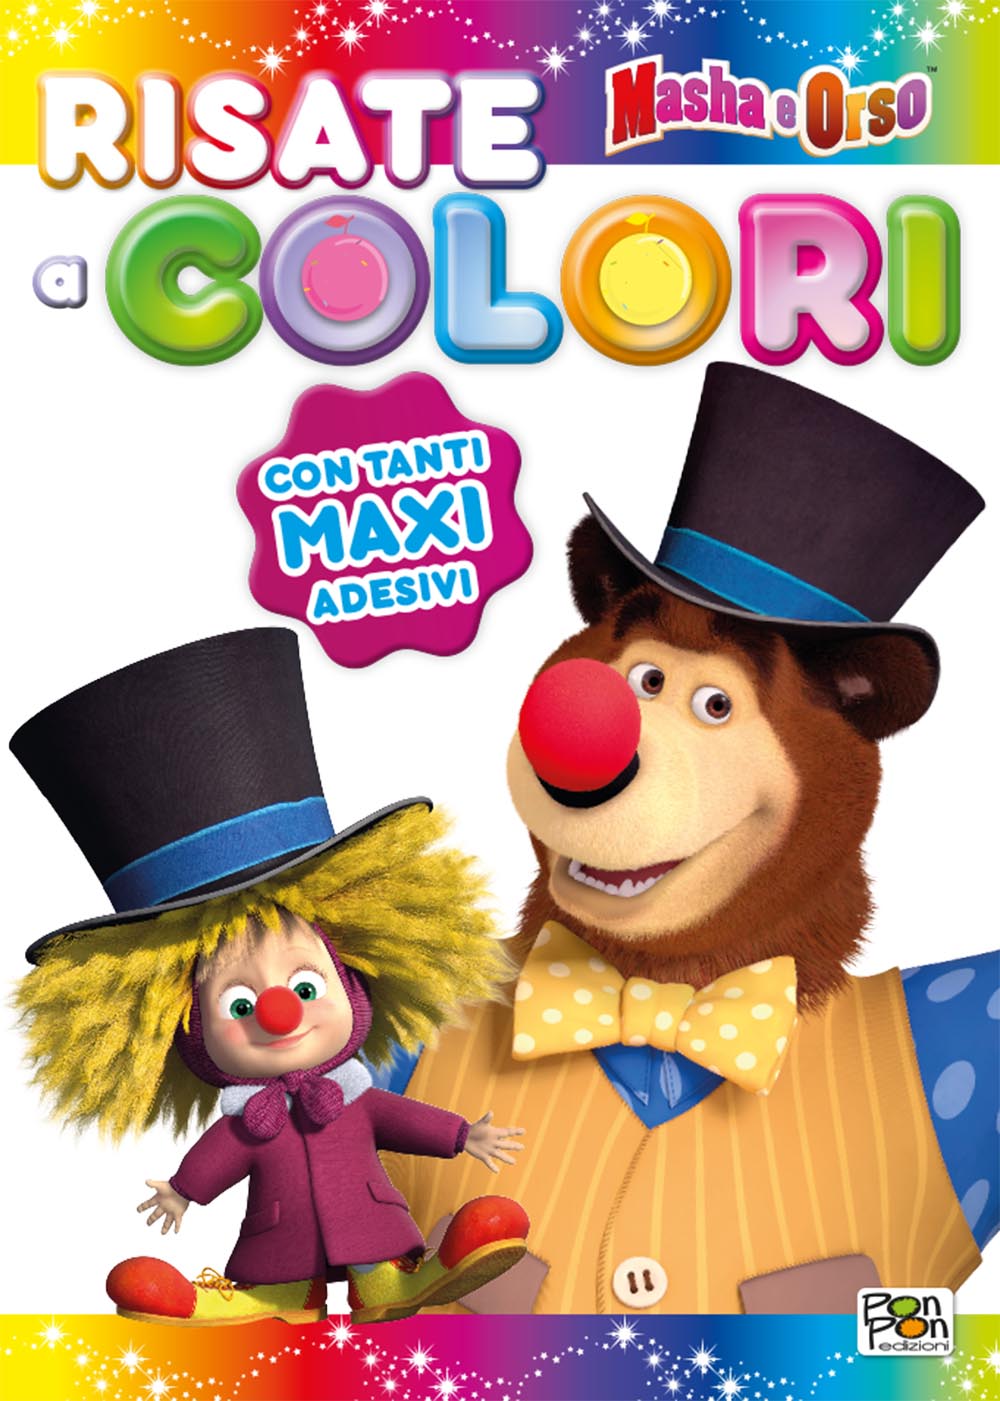 Sticker&Color Masha e Orso - Risate a colori